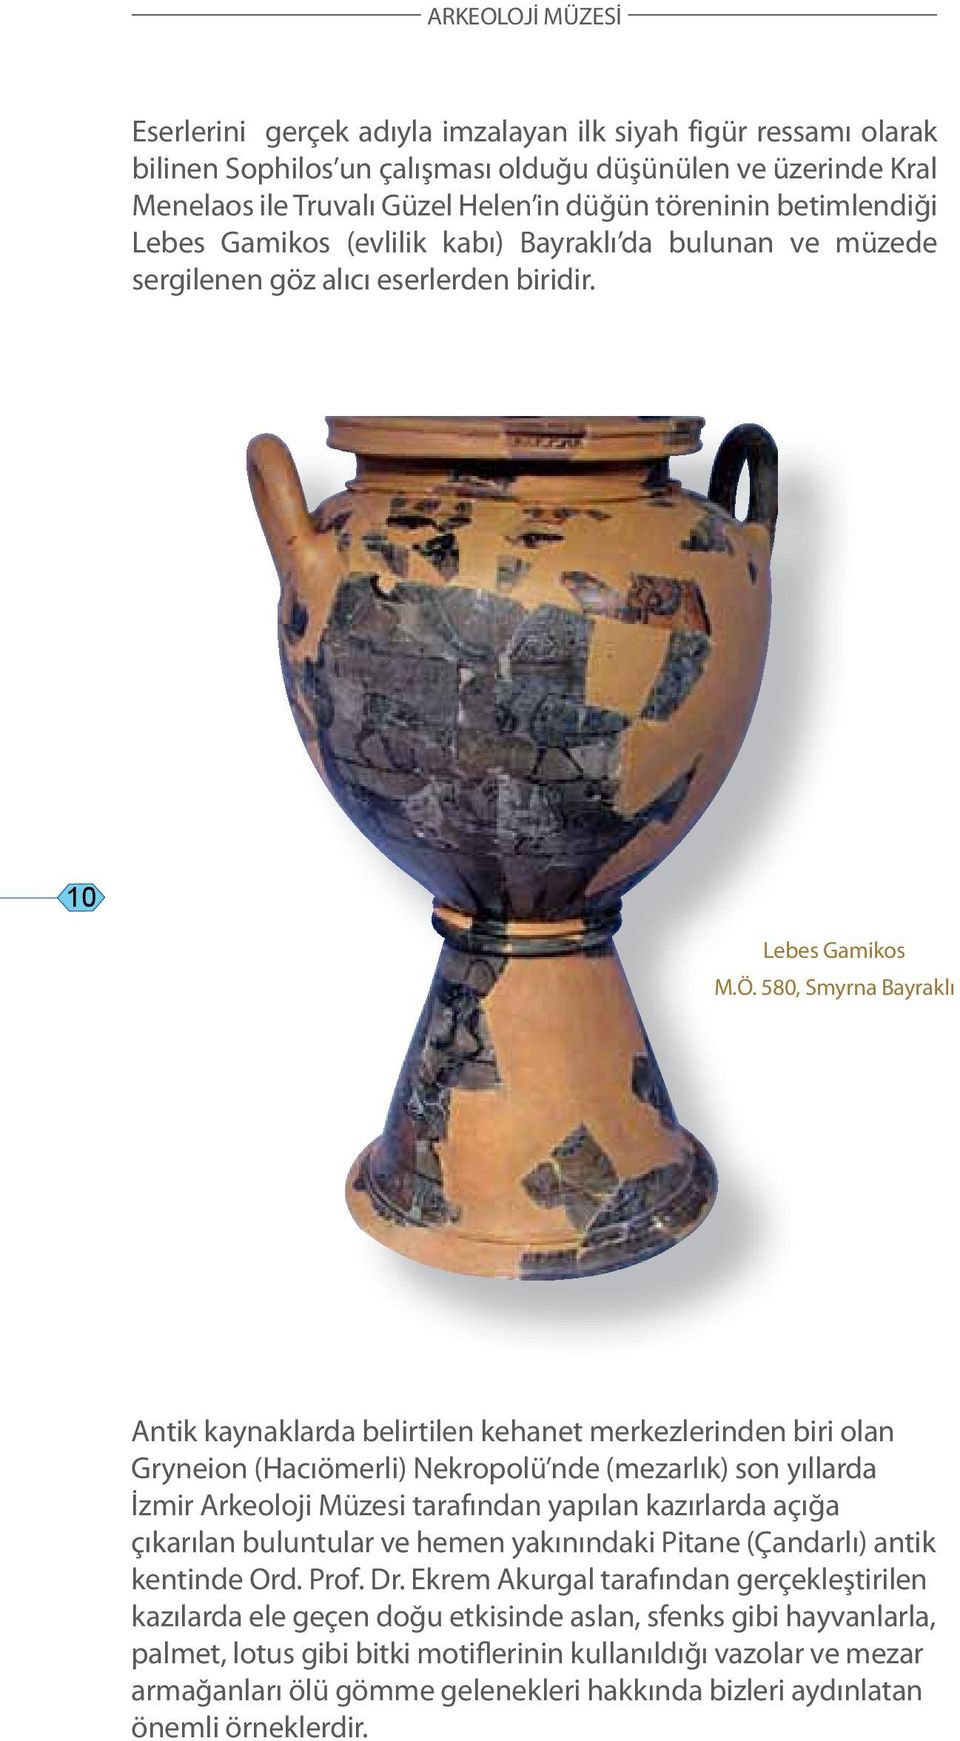 580, Smyrna Bayraklı Antik kaynaklarda belirtilen kehanet merkezlerinden biri olan Gryneion (Hacıömerli) Nekropolü nde (mezarlık) son yıllarda İzmir Arkeoloji Müzesi tarafından yapılan kazırlarda